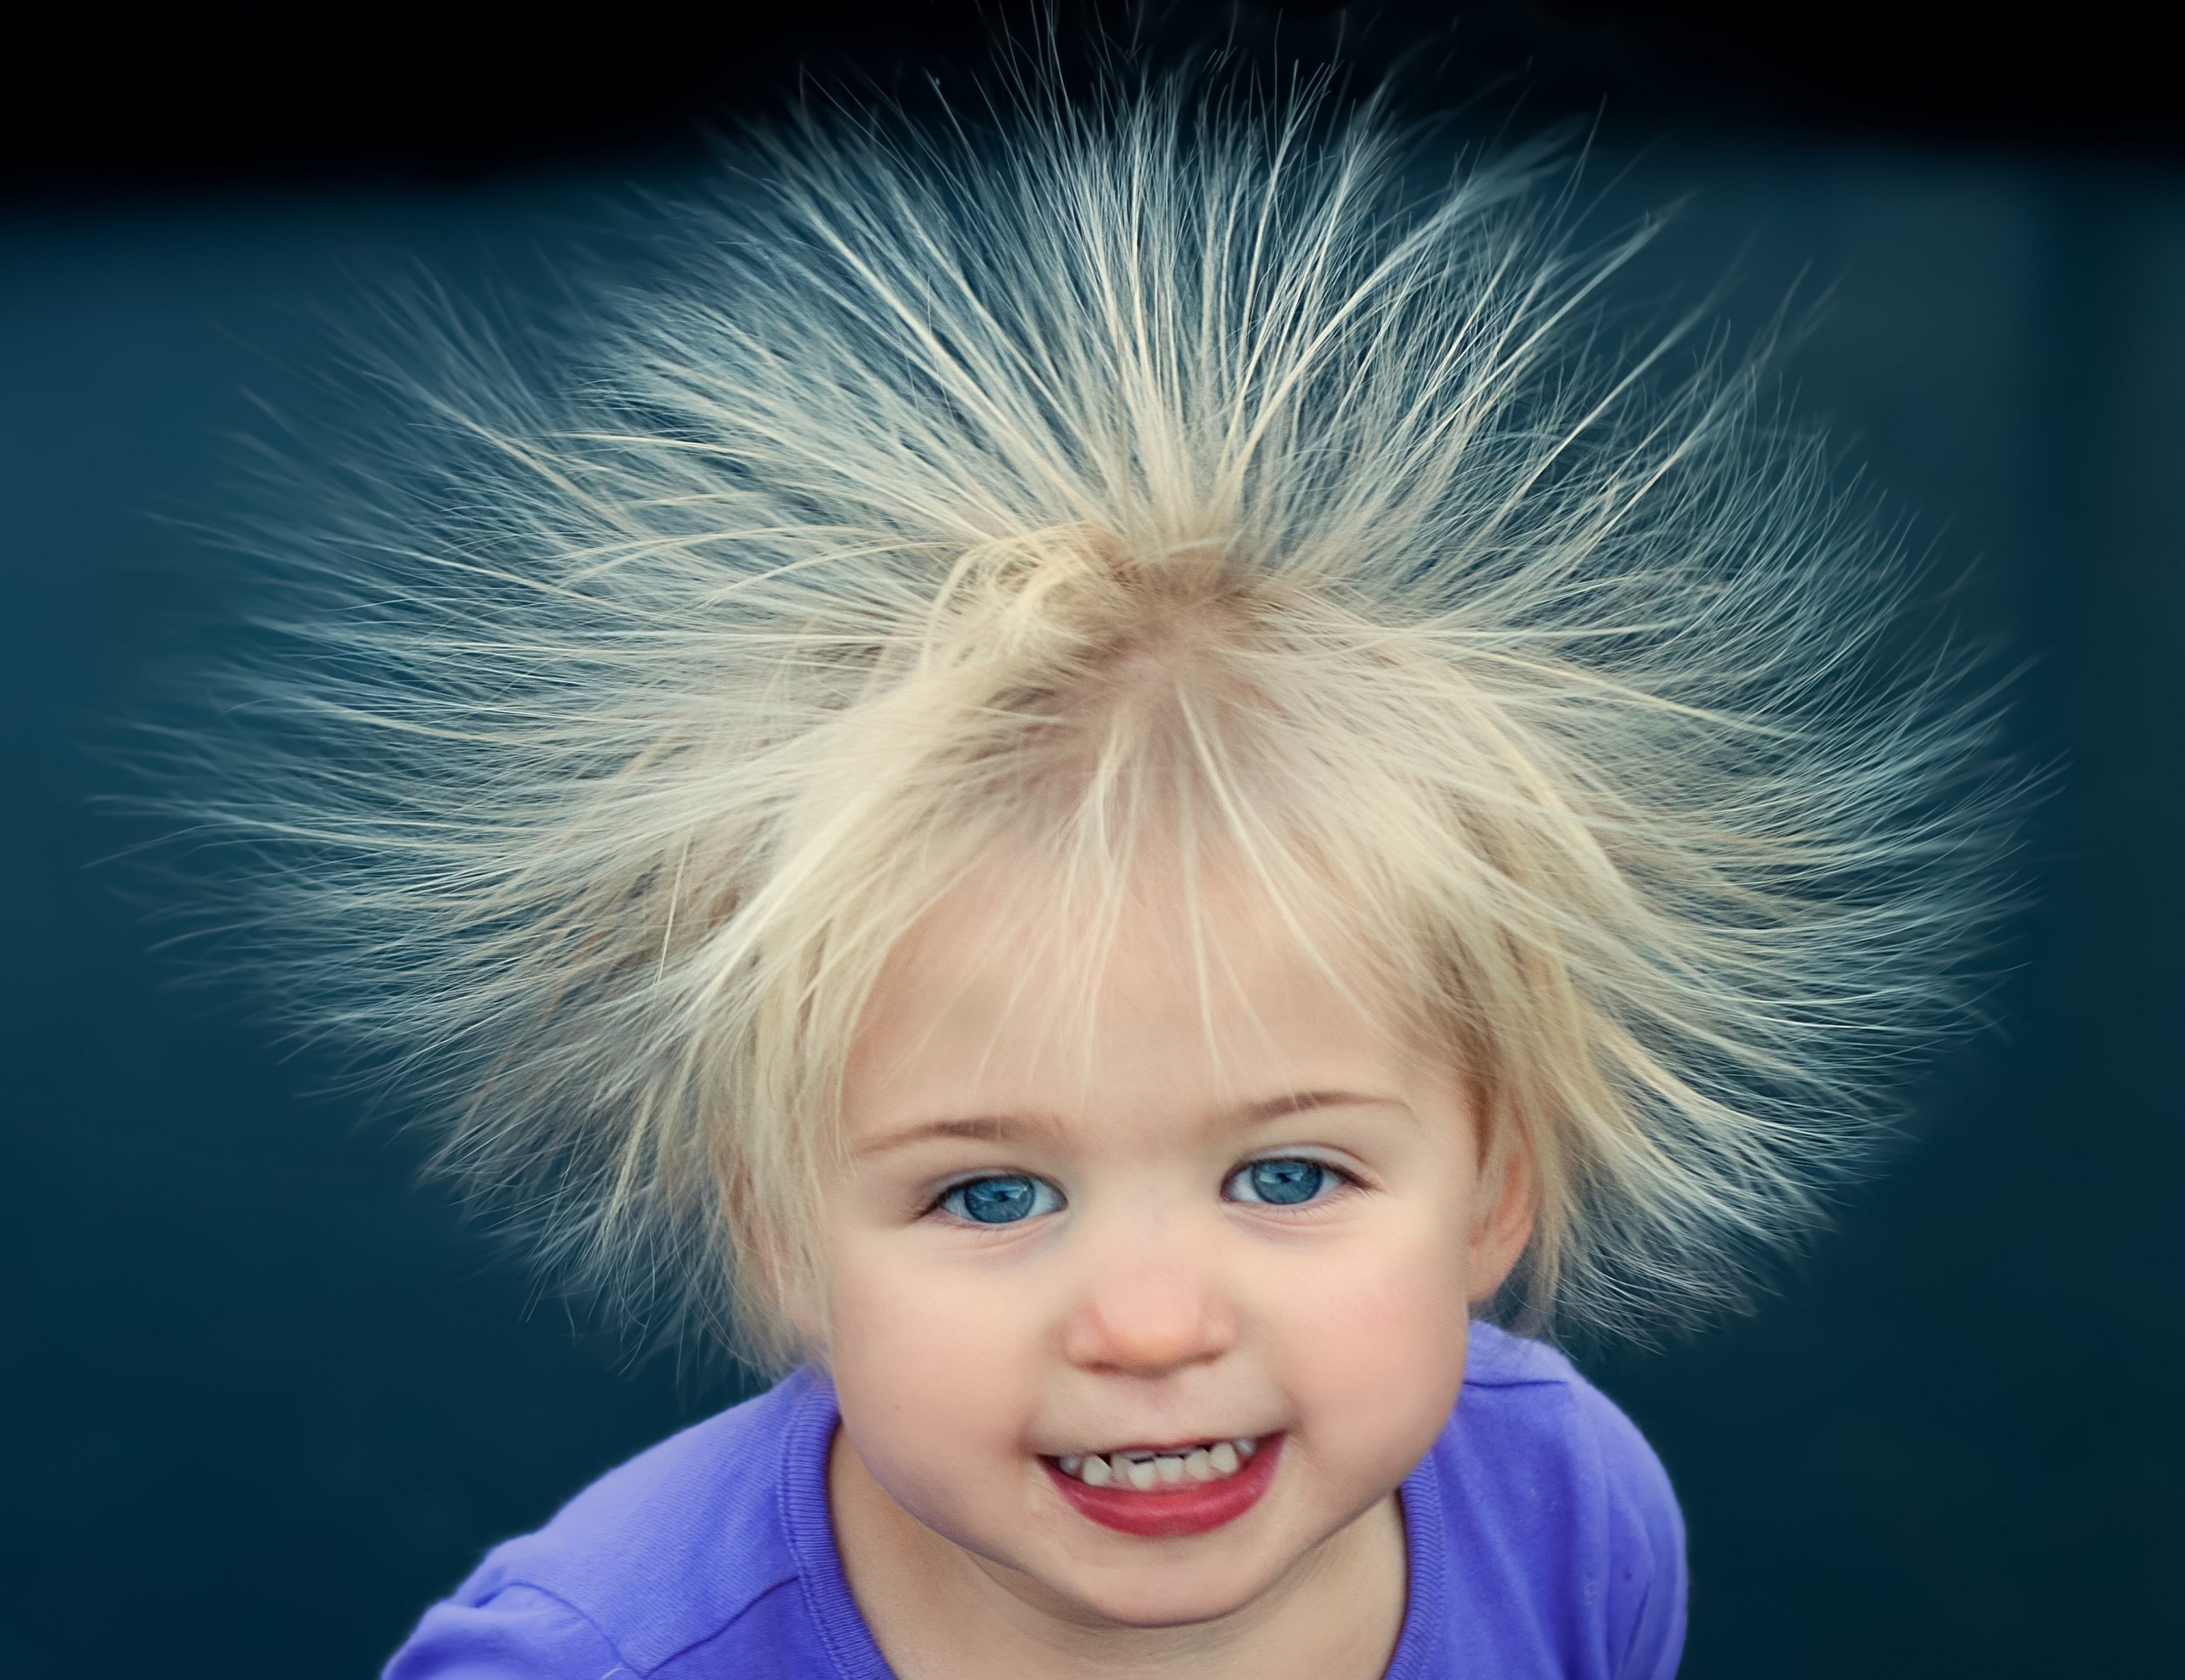 Волосы сильно электризуются. Девочка с наэлектризованными волосами. Волосы одуванчиком. Ребенок с взъерошенными волосами. Мальчик одуванчик.